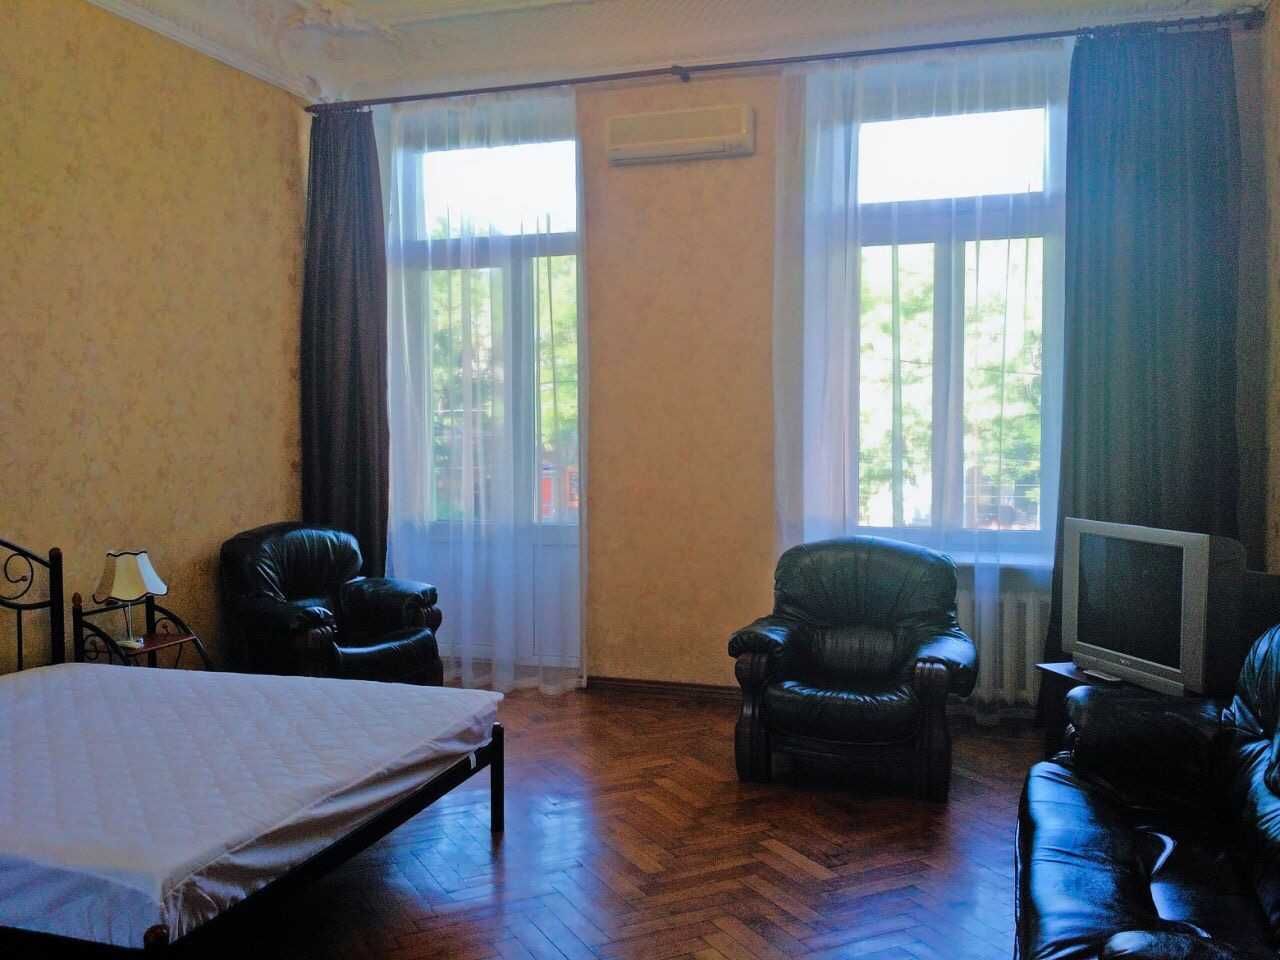 Самый центр Одессы.5 раздельных комнат.Проживание/бизнес.